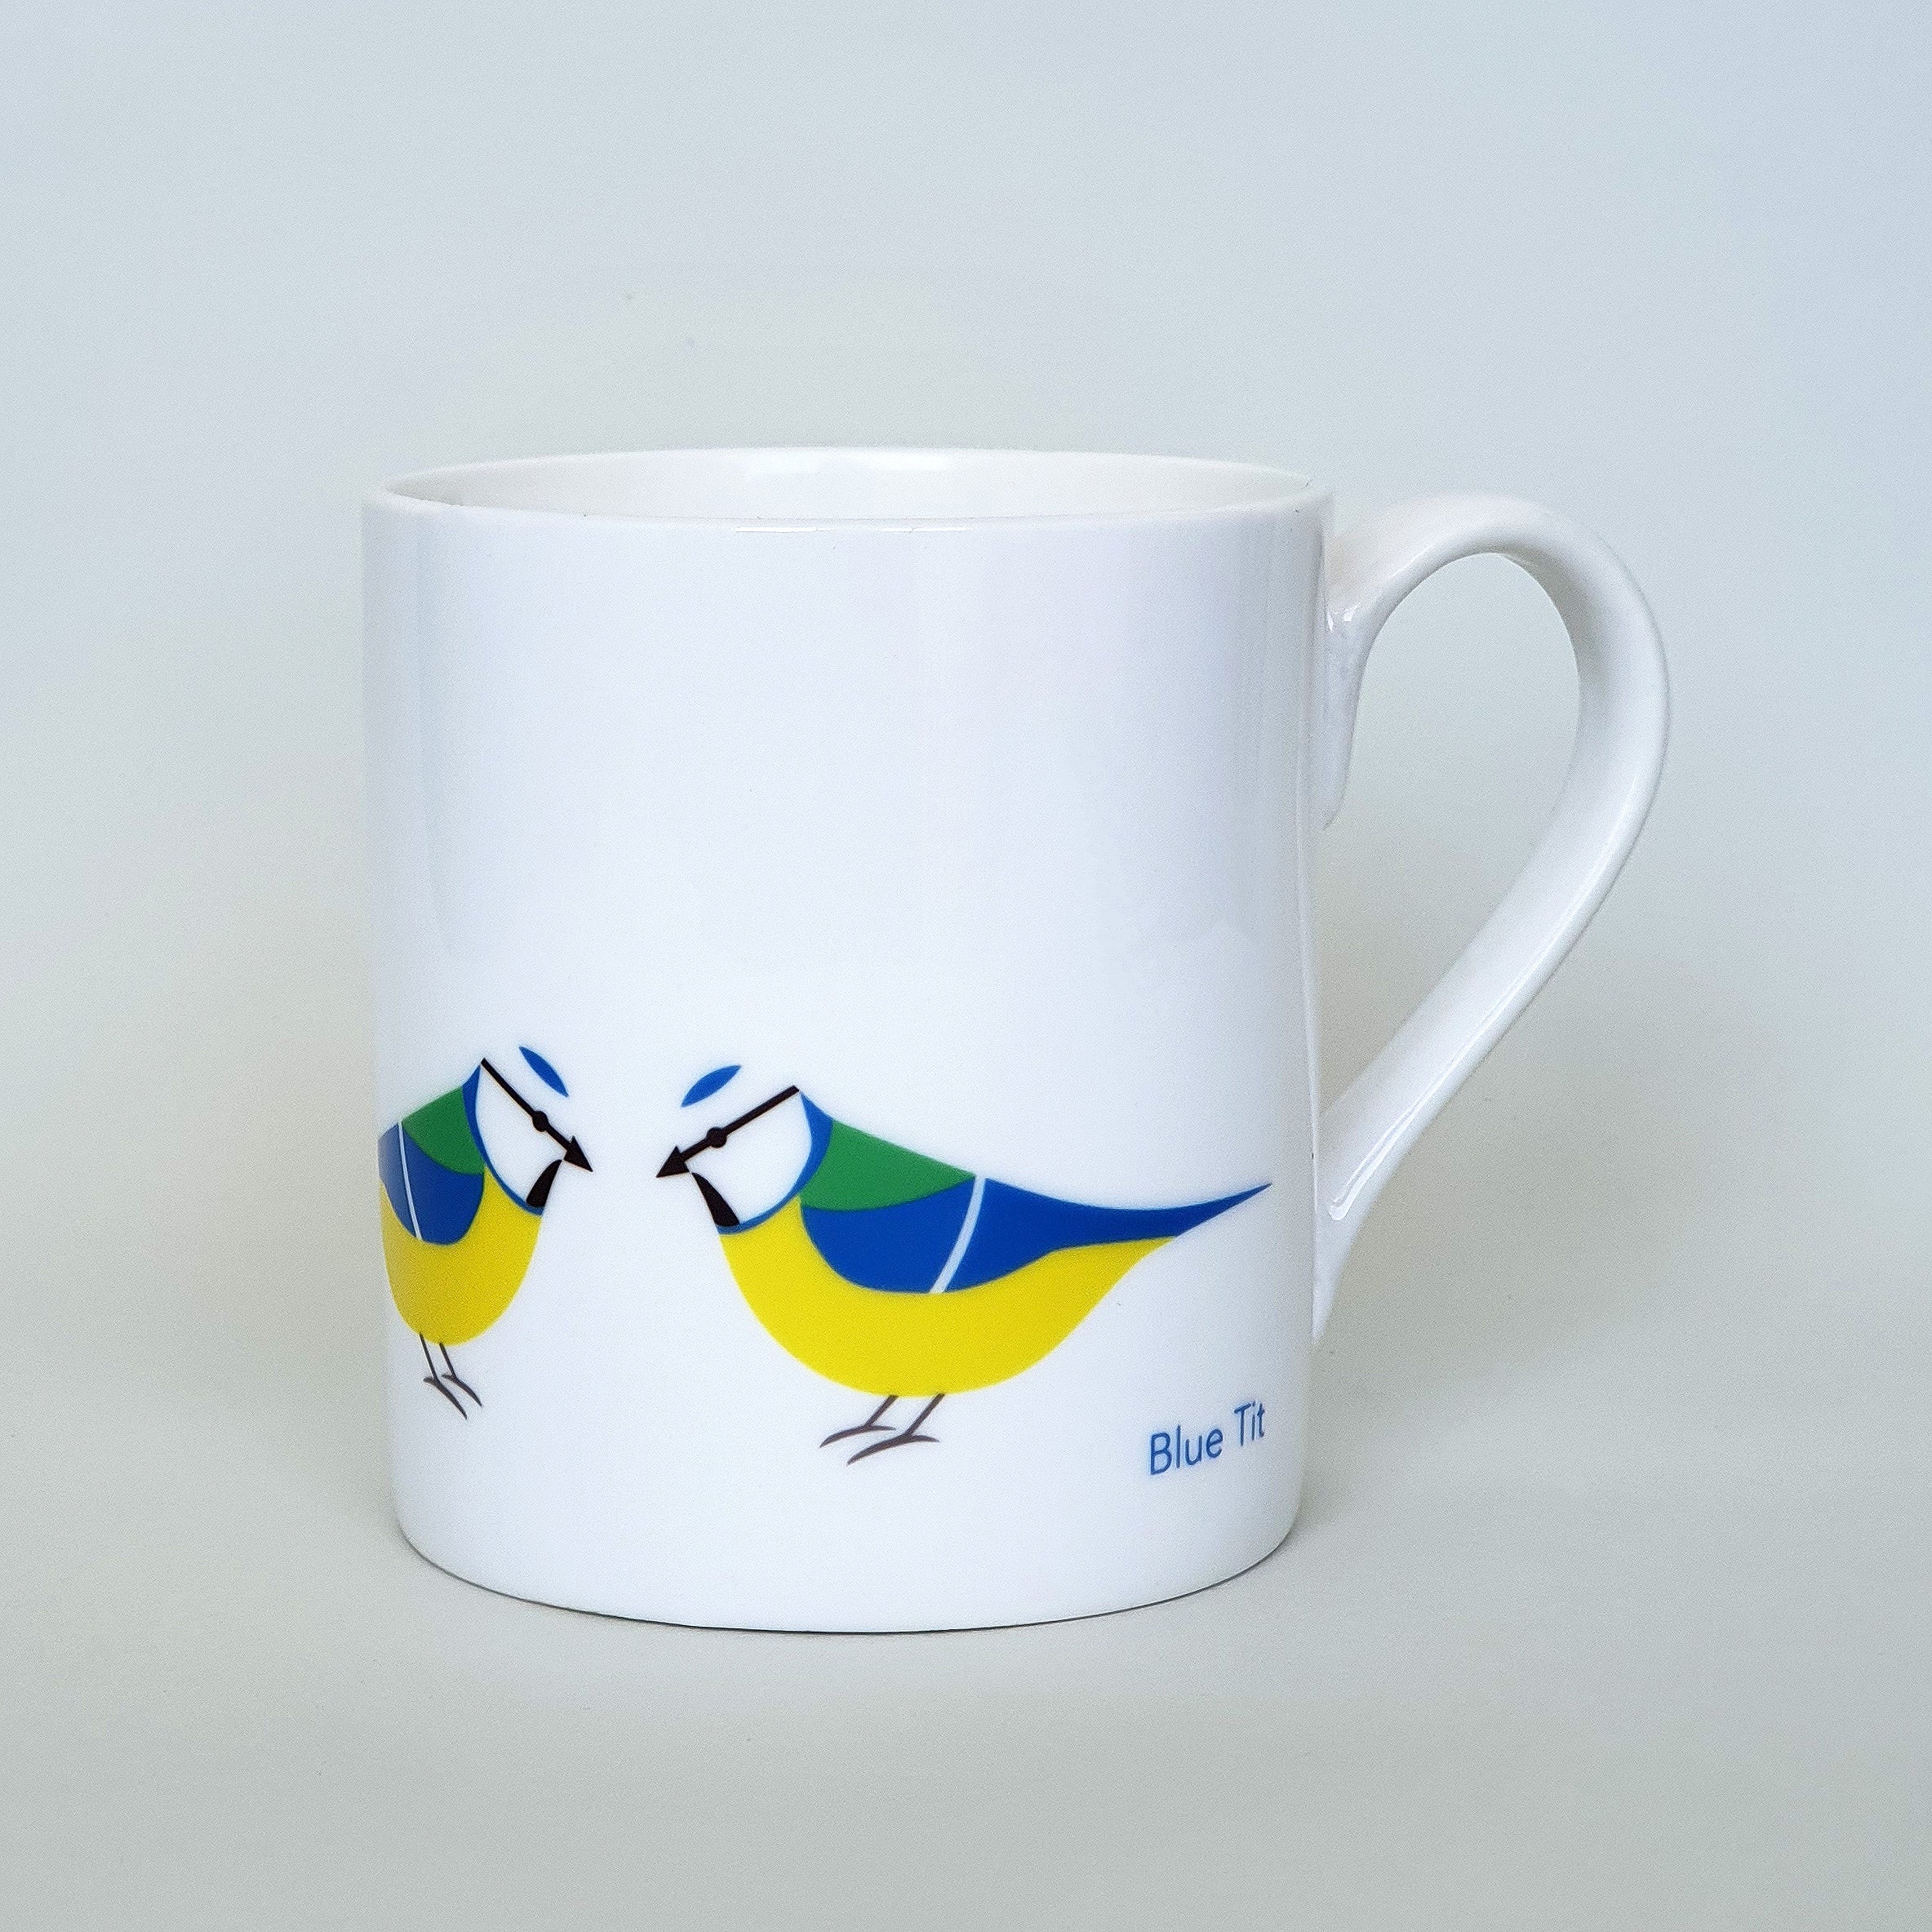 Blue Tit mug